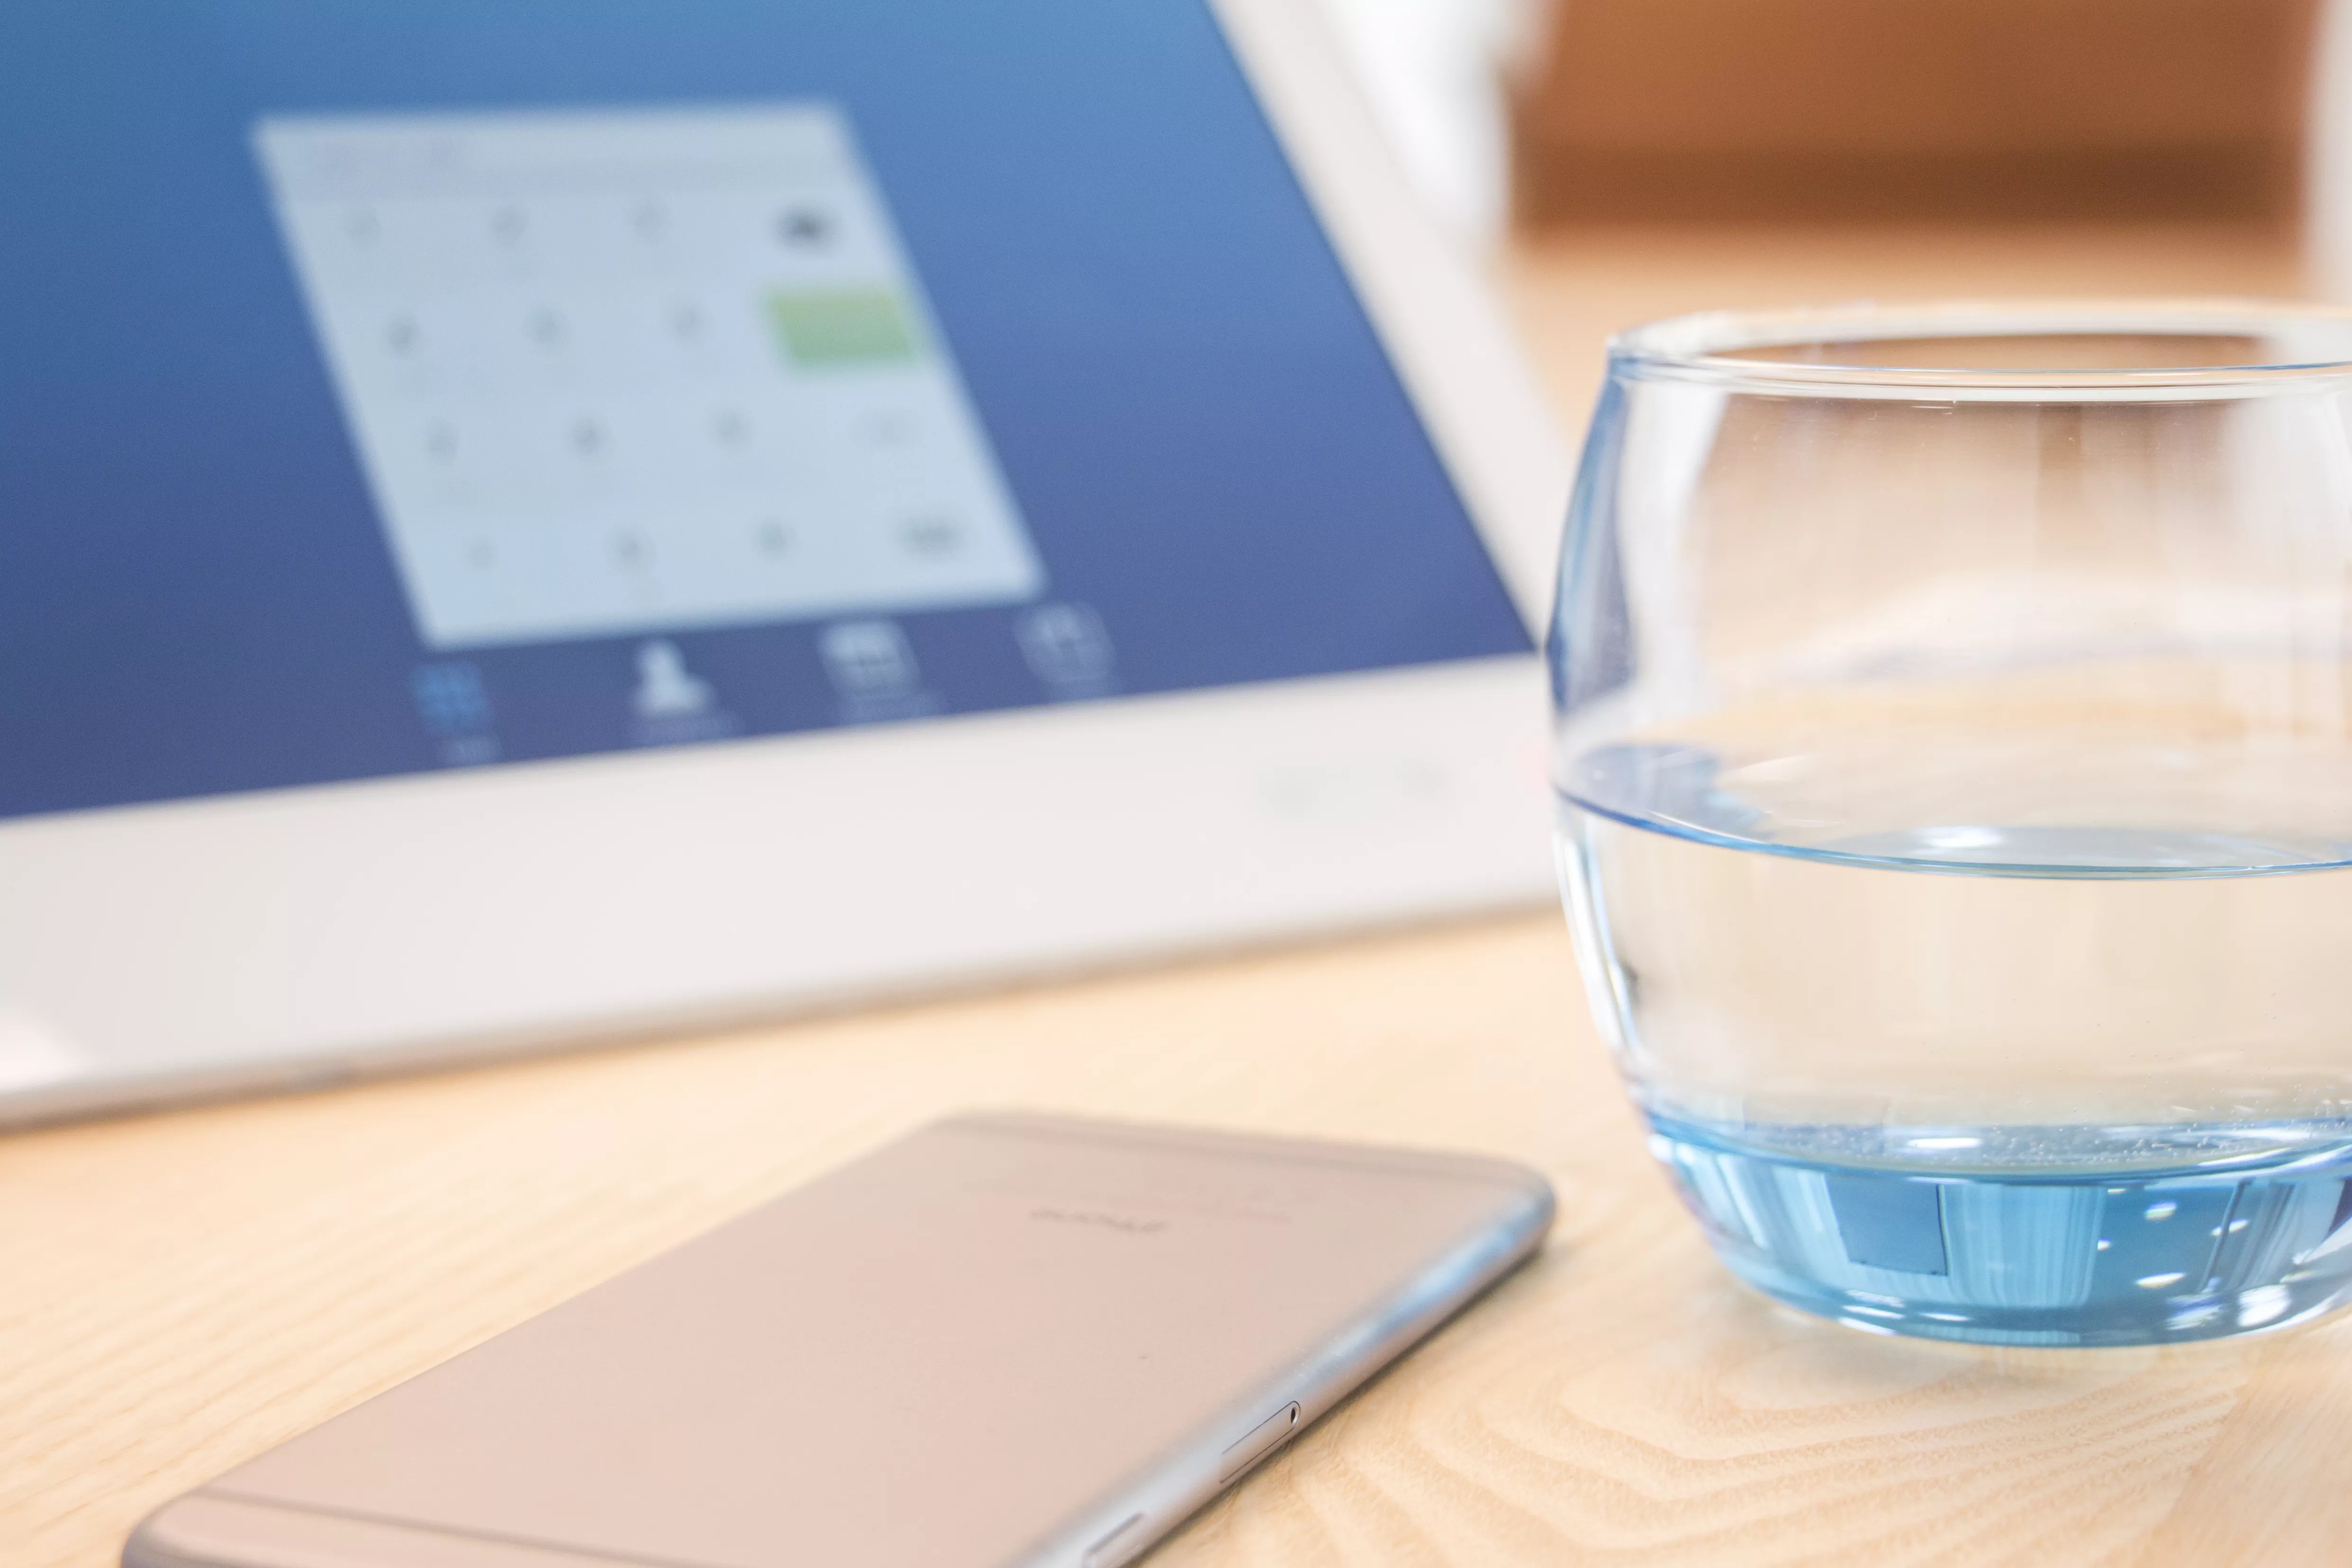 Pracovný stôl s pohárom vody, mobilom a tabletom